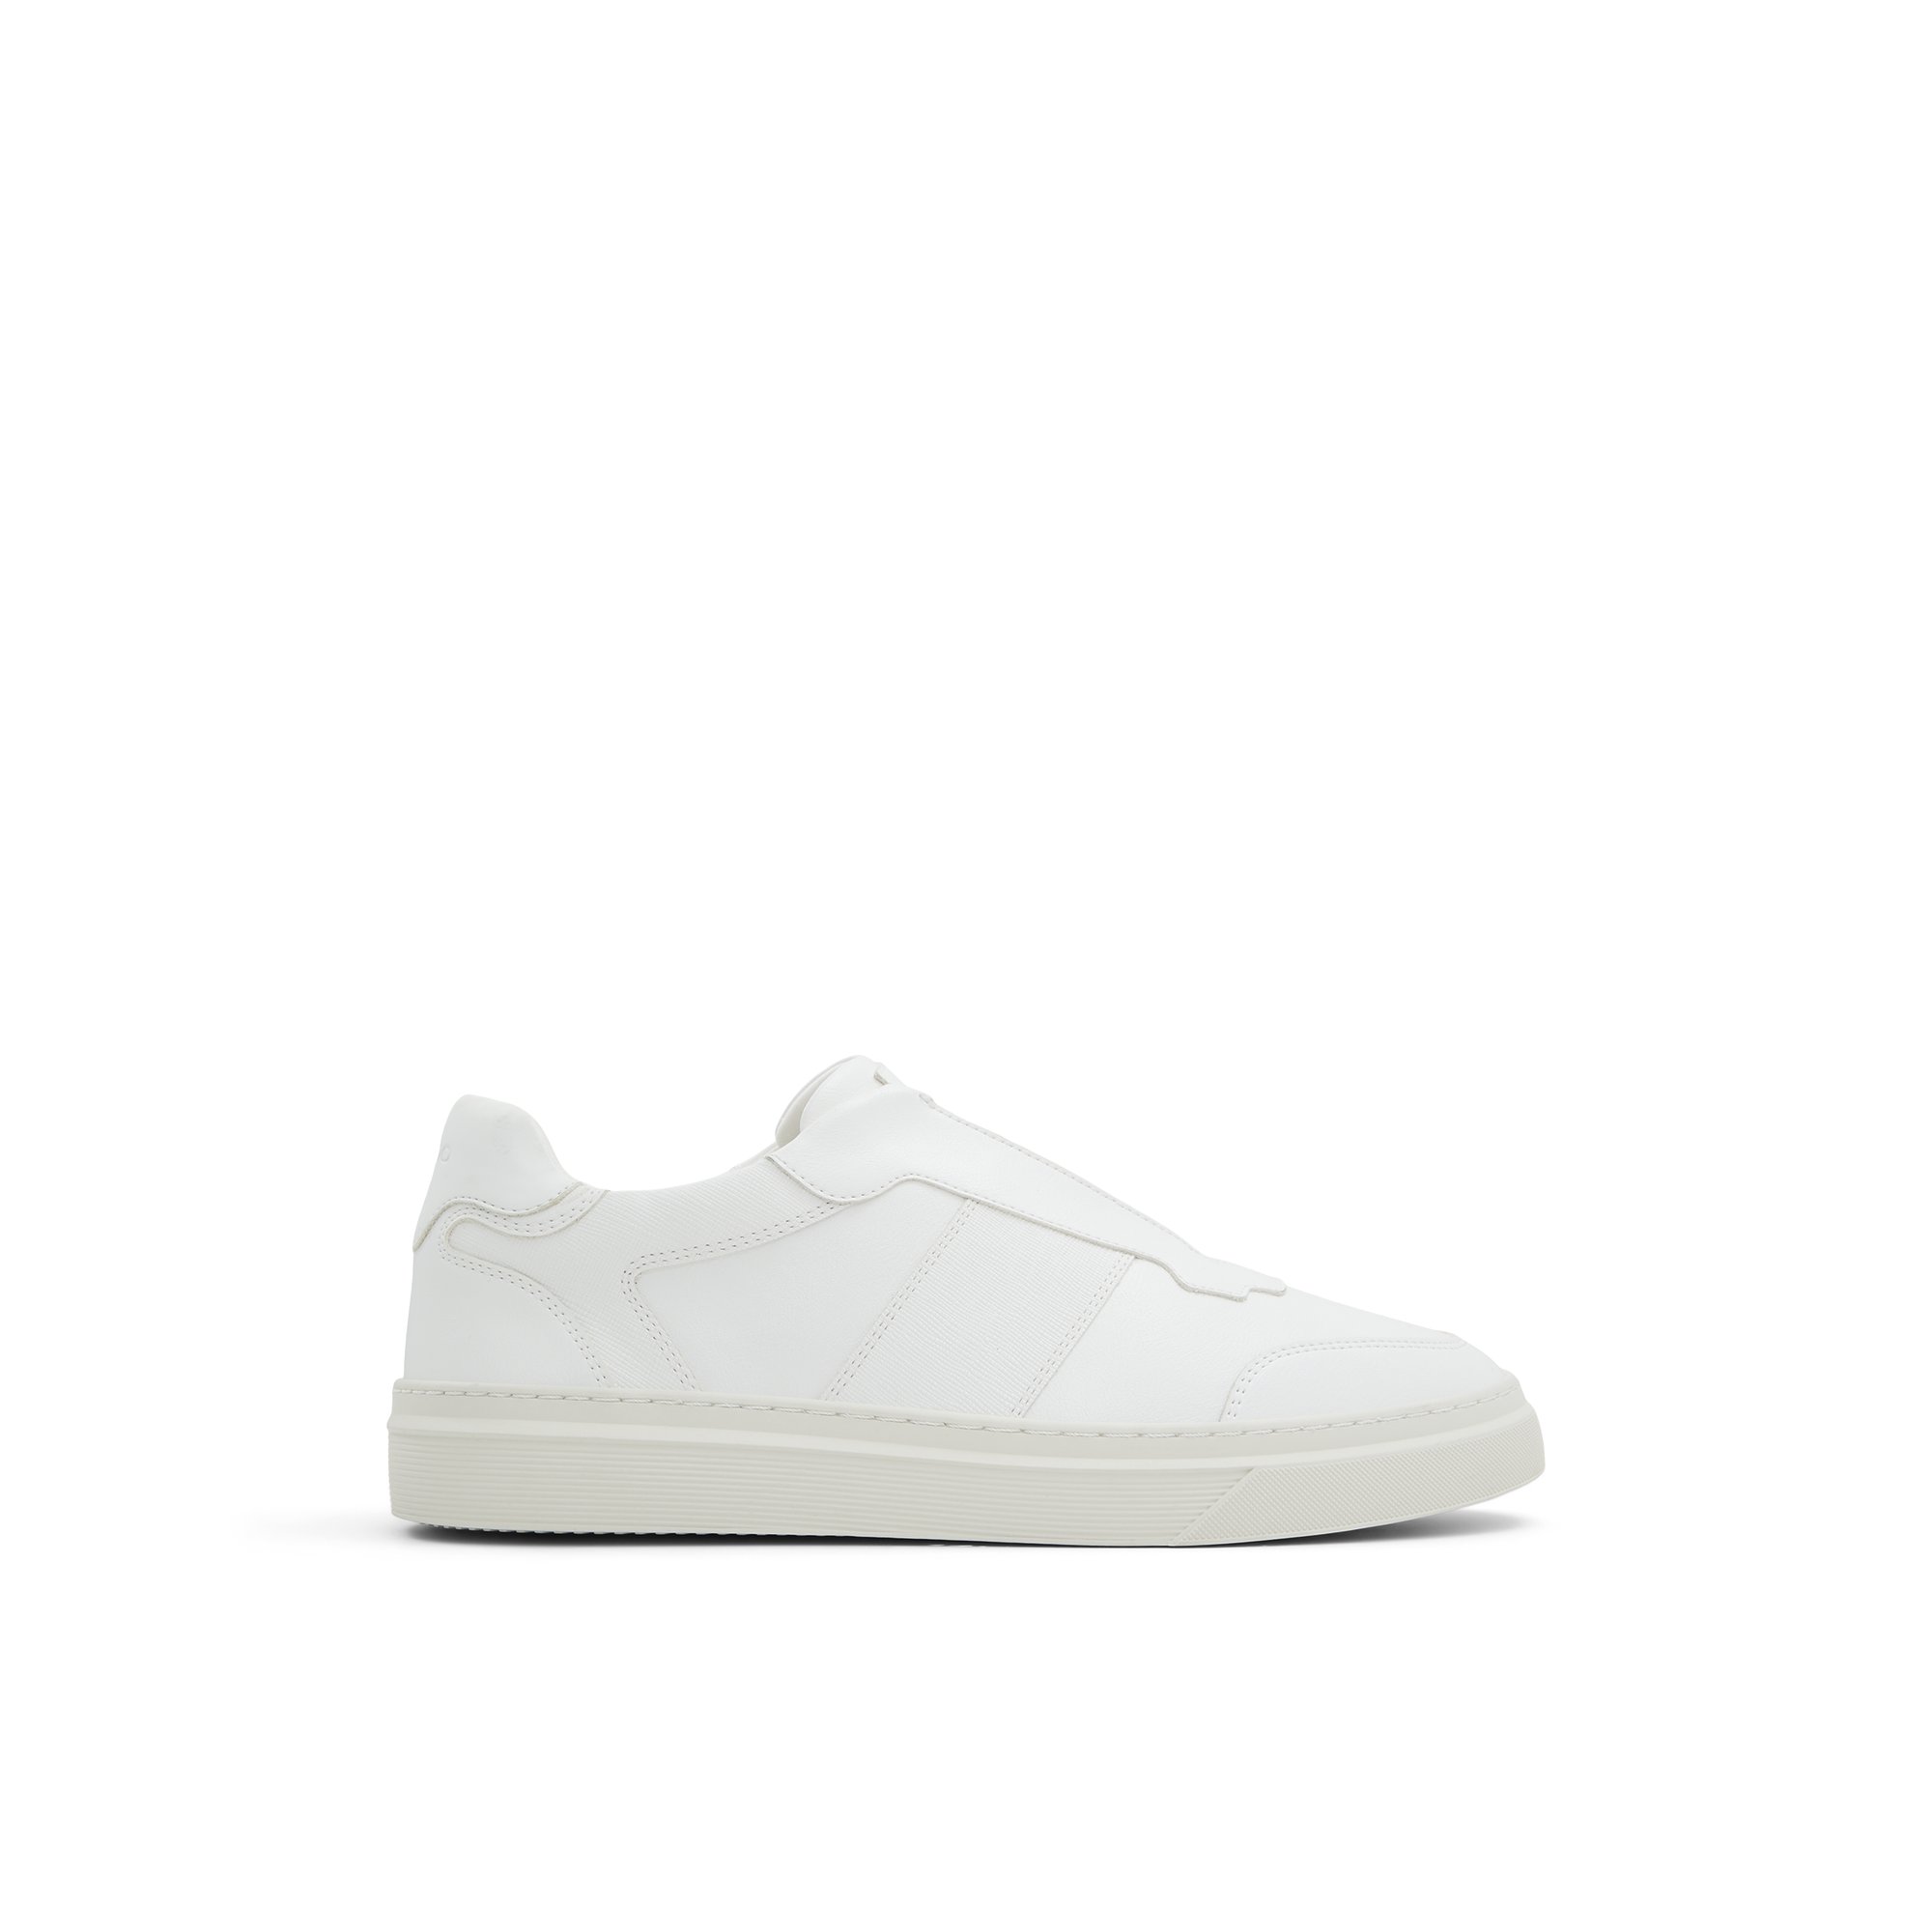 ALDO Ashton - Men's Slip-on Sneakers - White